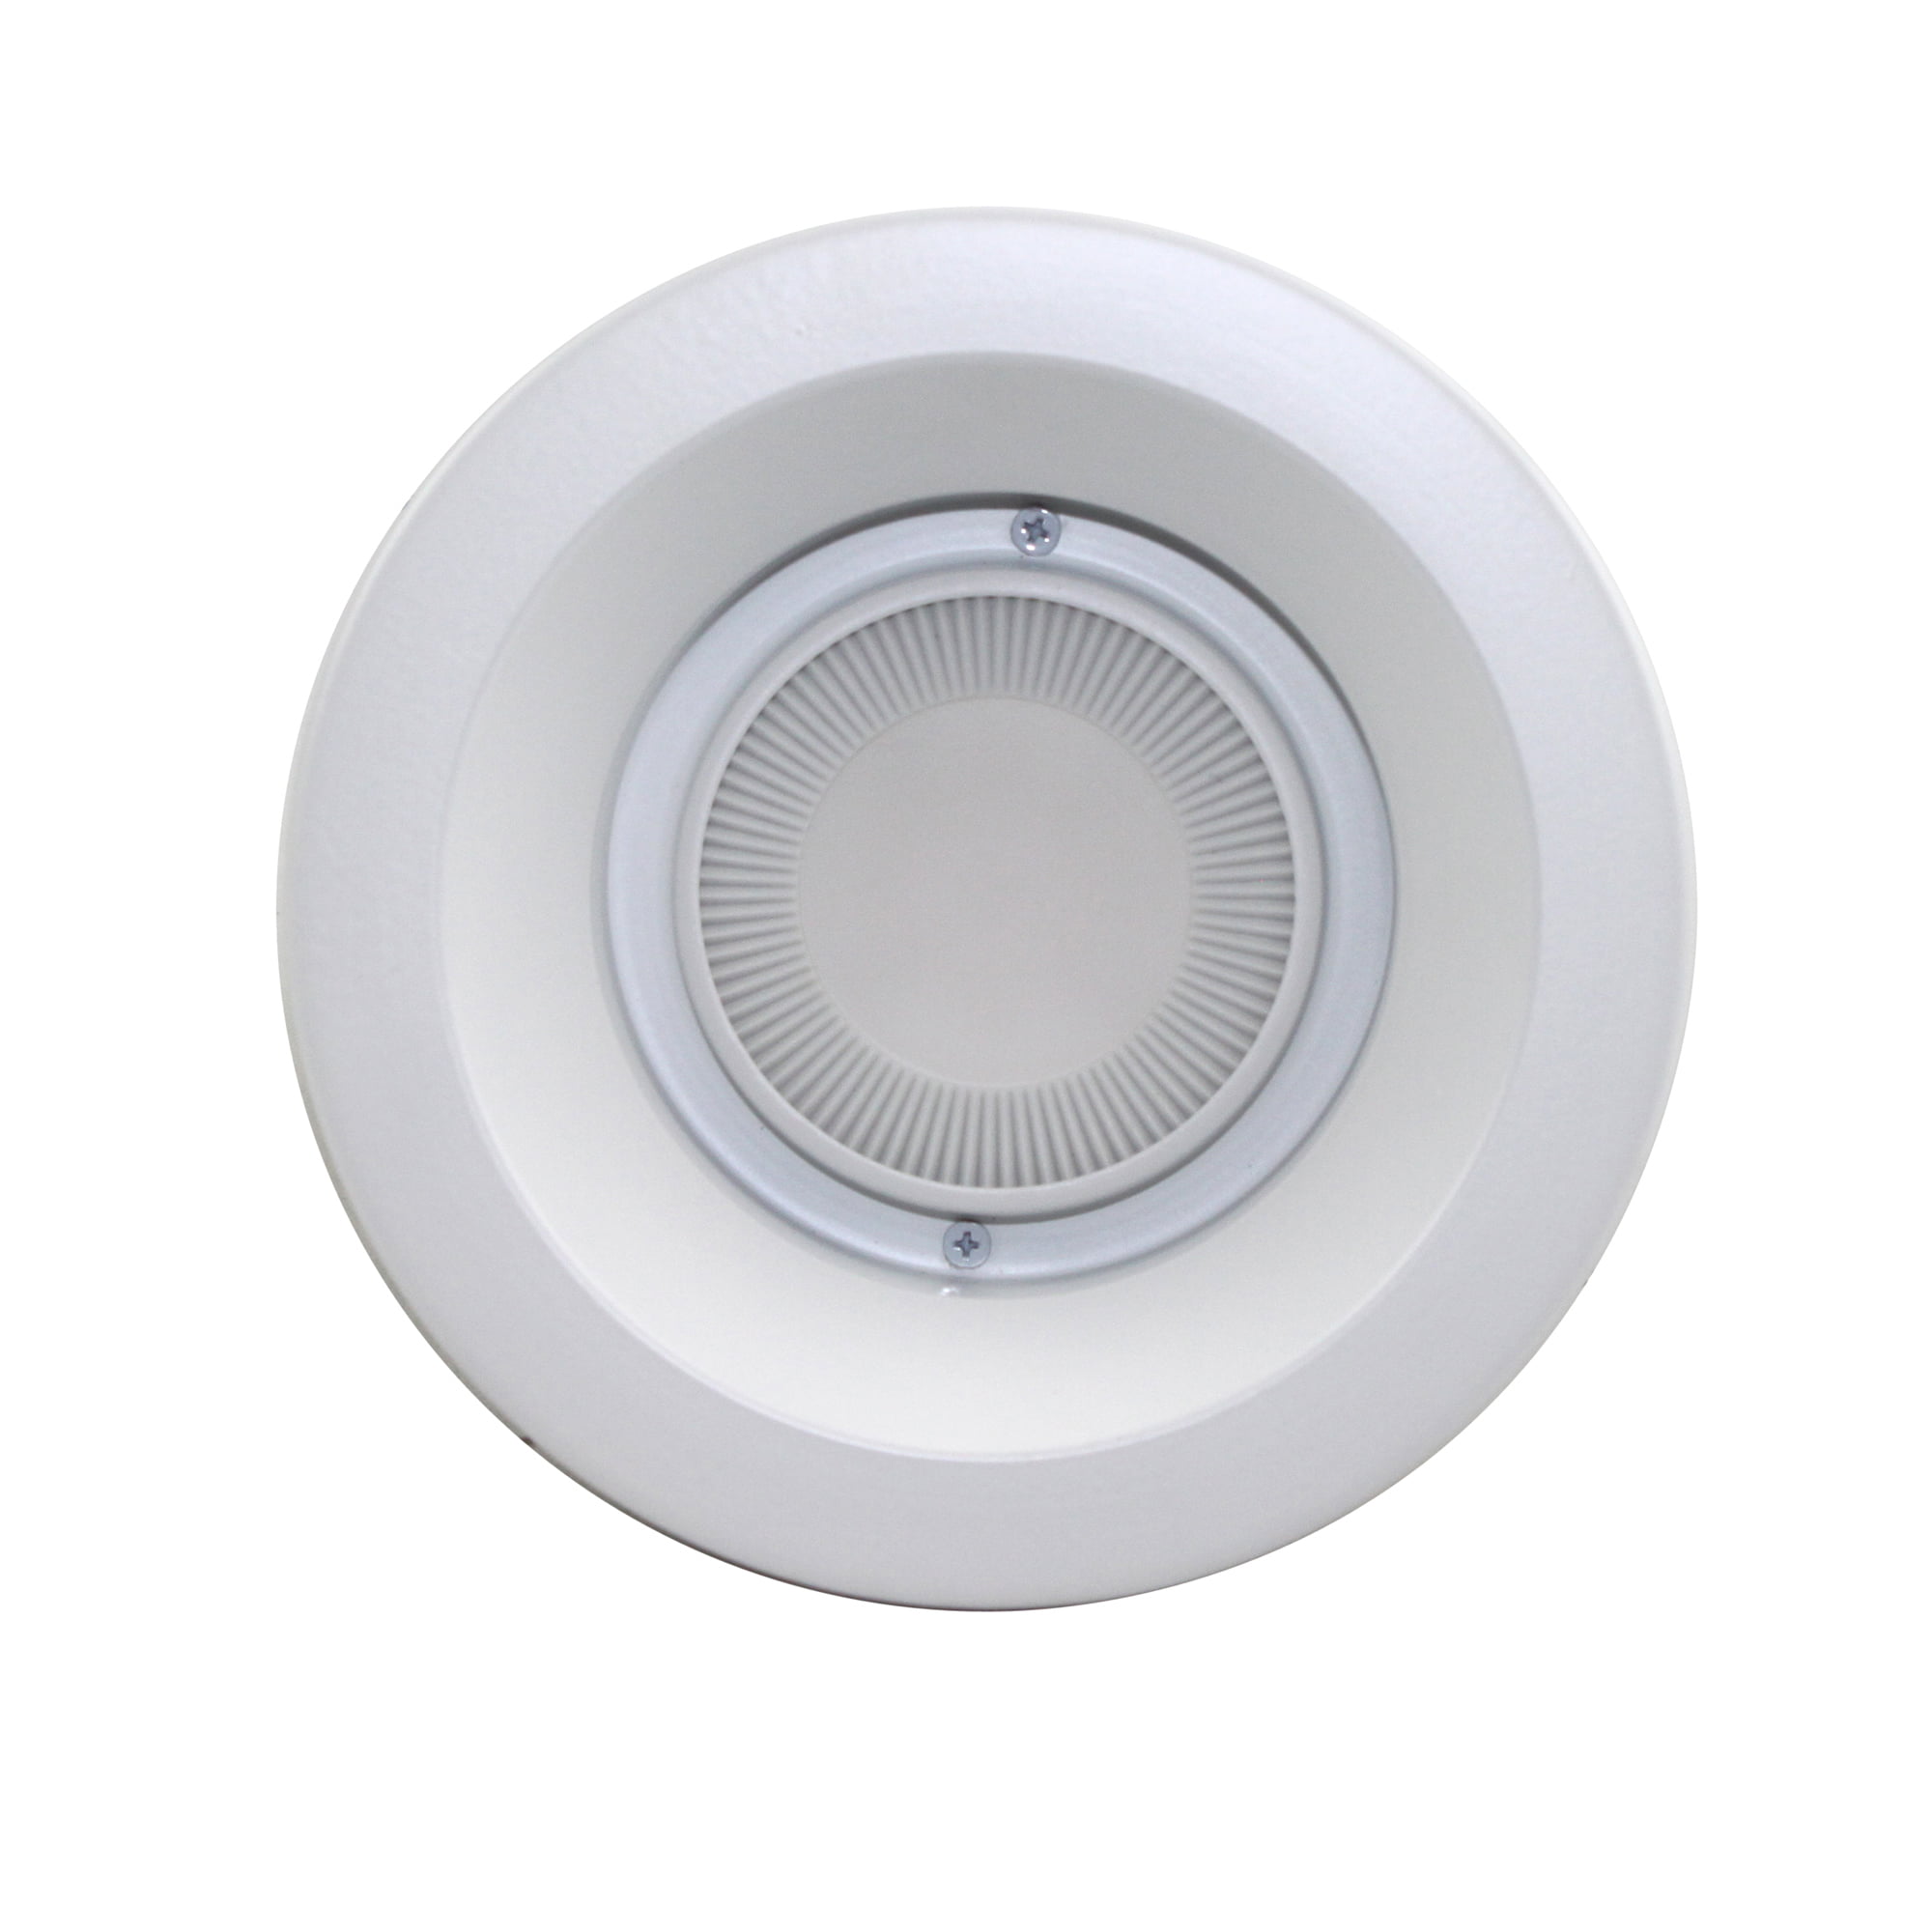 Capri Lighting SH12P Lensed 6 Shower Light Recessed Ceiling Waterproof Trim White 